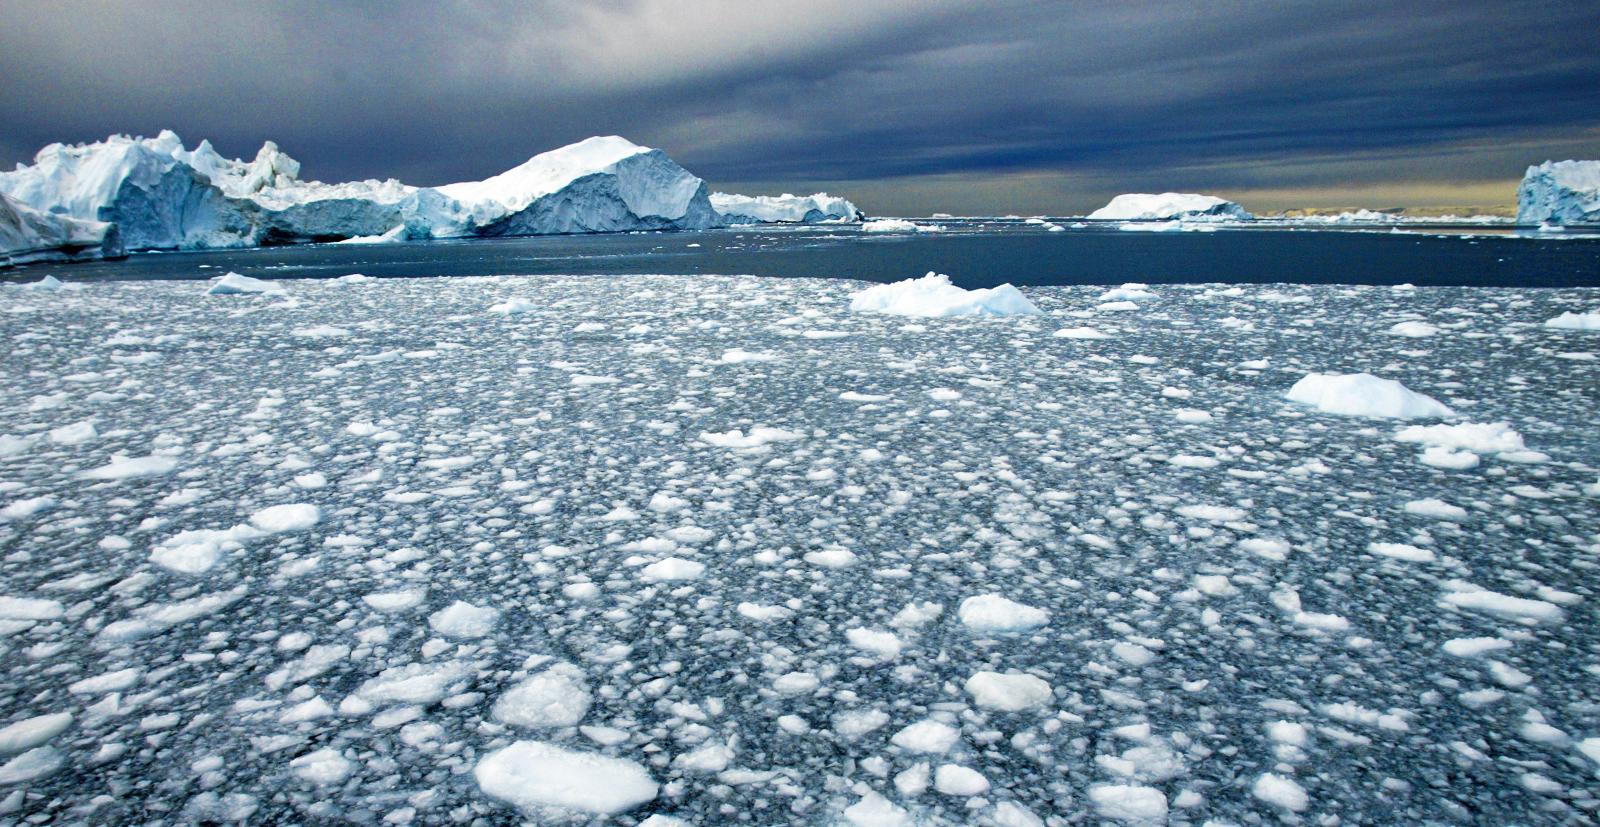 Beskytte naturen: Et av våre prioriterte saksområder er å bidra til å håndtere klimaendringene som påvirker Arktis, skriver EUs Arktis-ambassadør. Foto: Jan-Morten Bjørnbakk / NTB scanpix